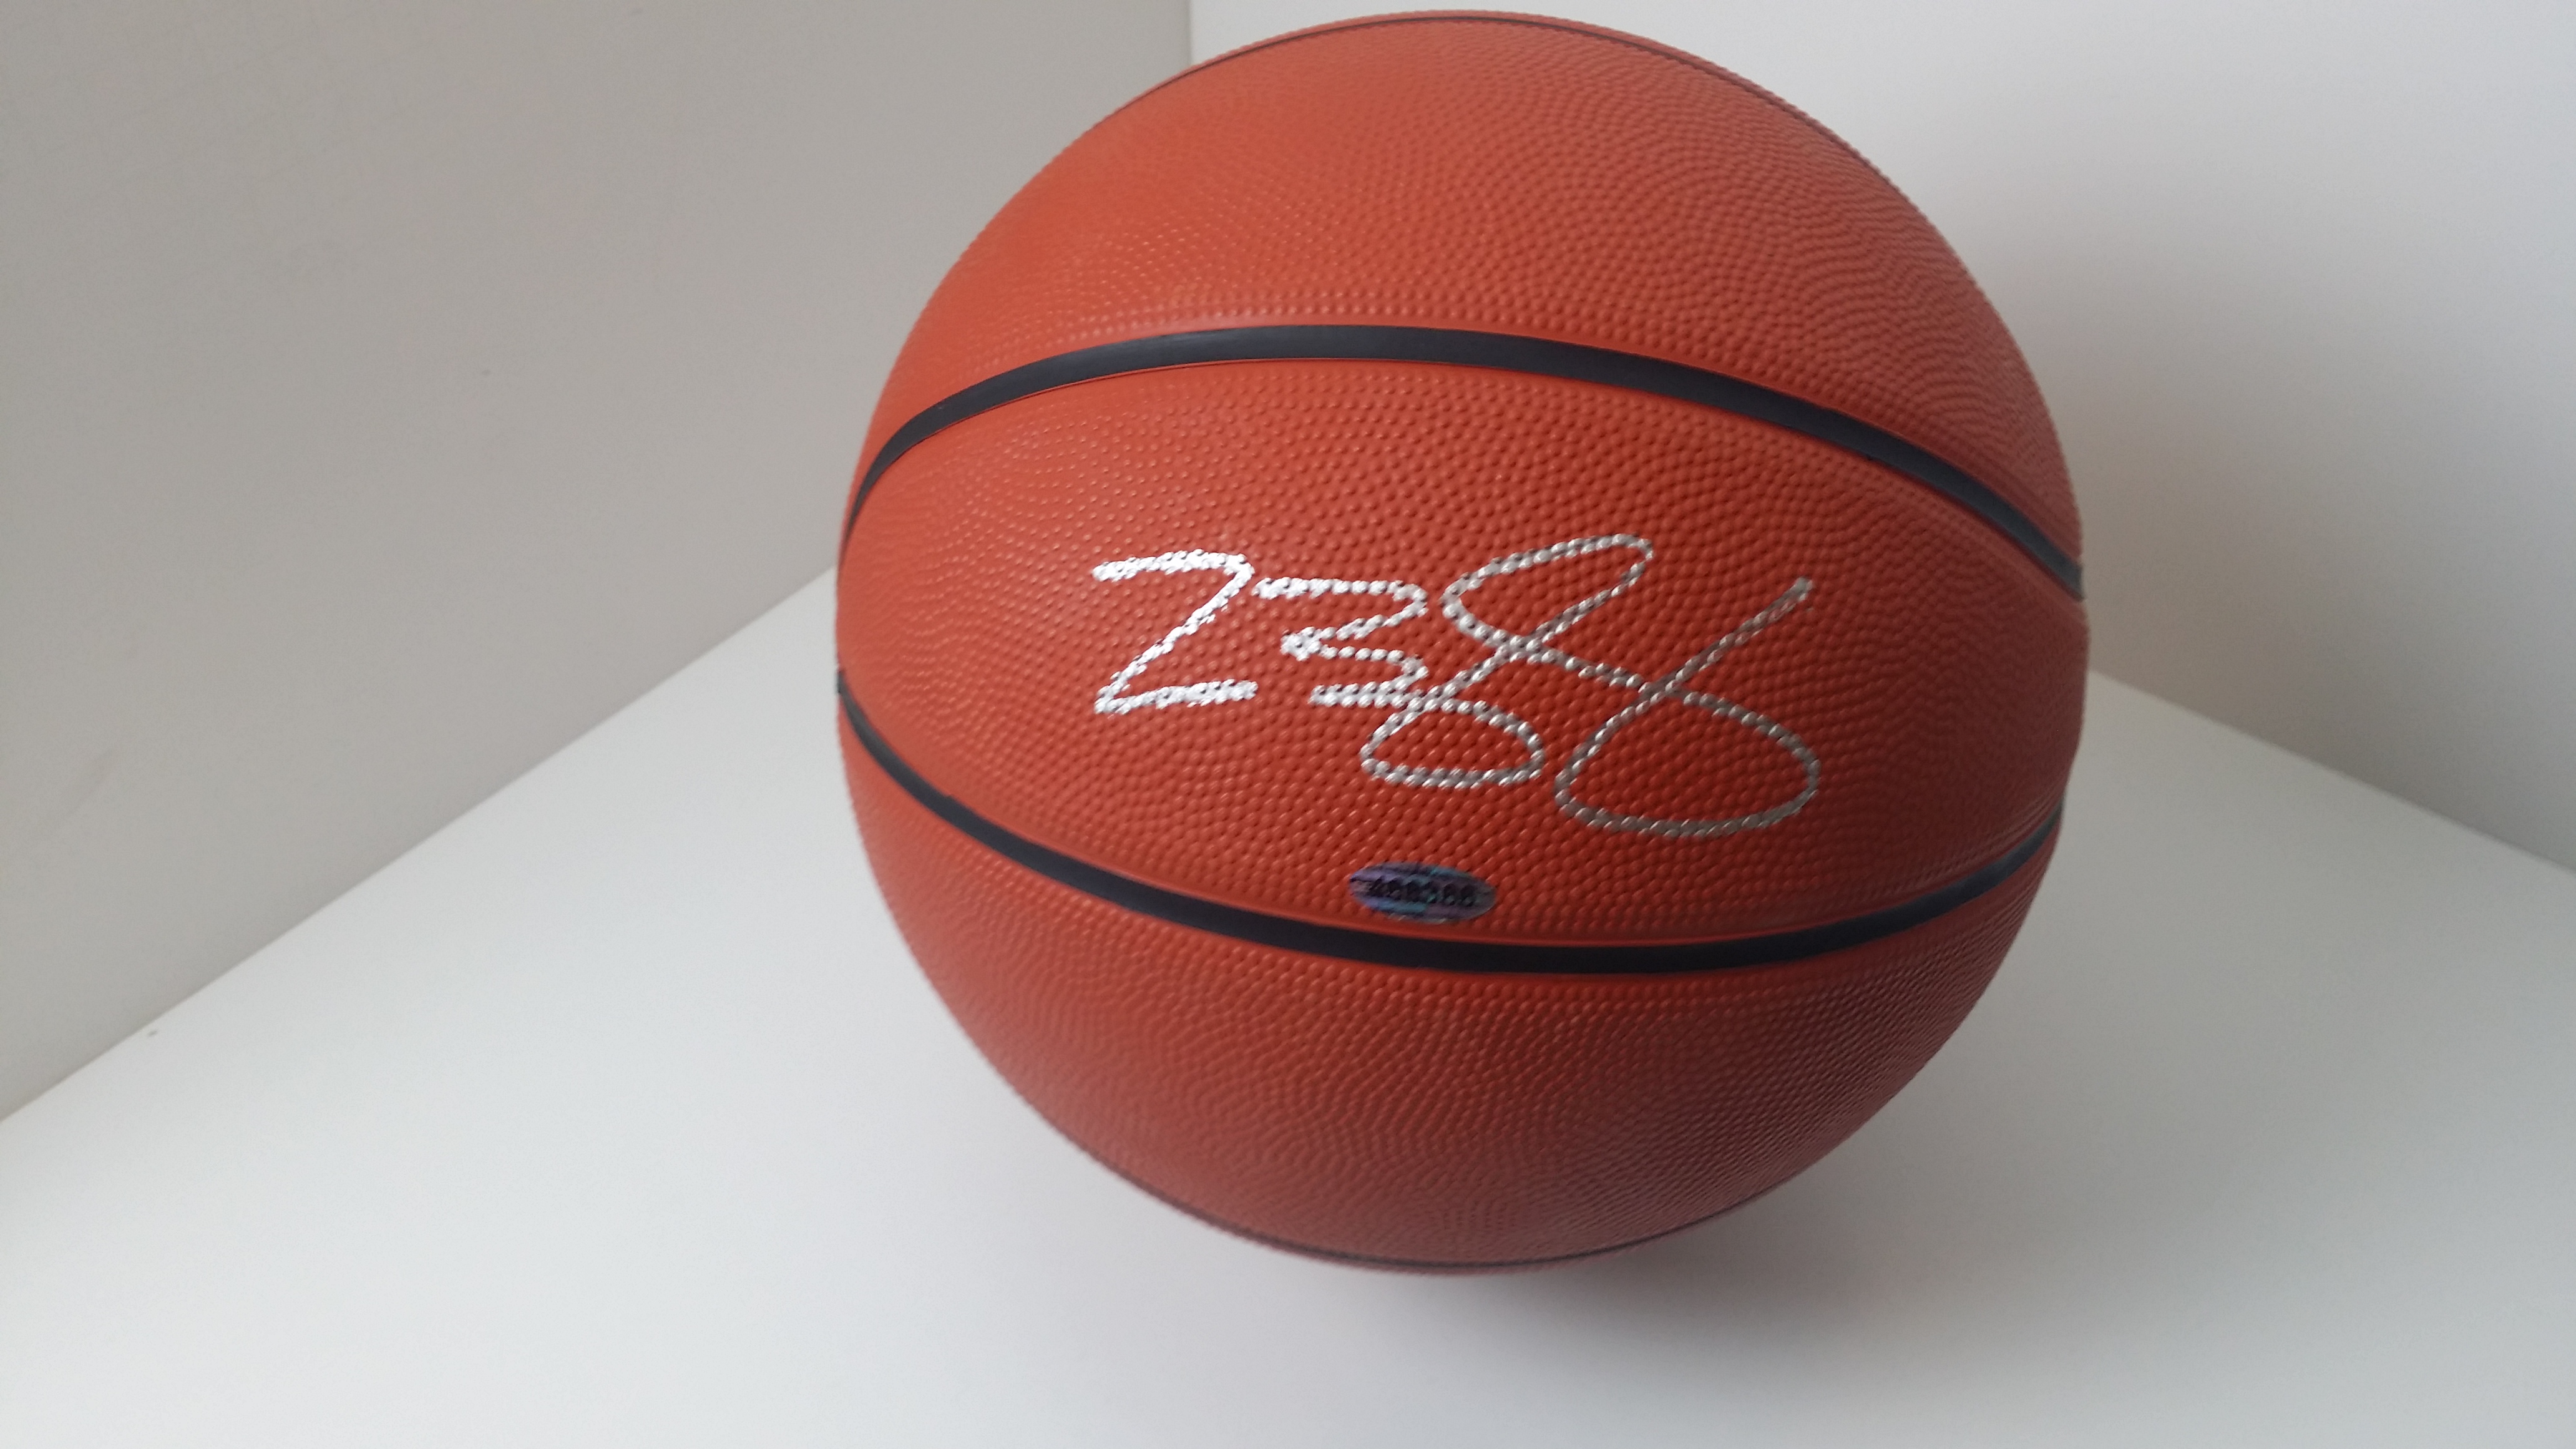 Lebron James autographed Basketball 